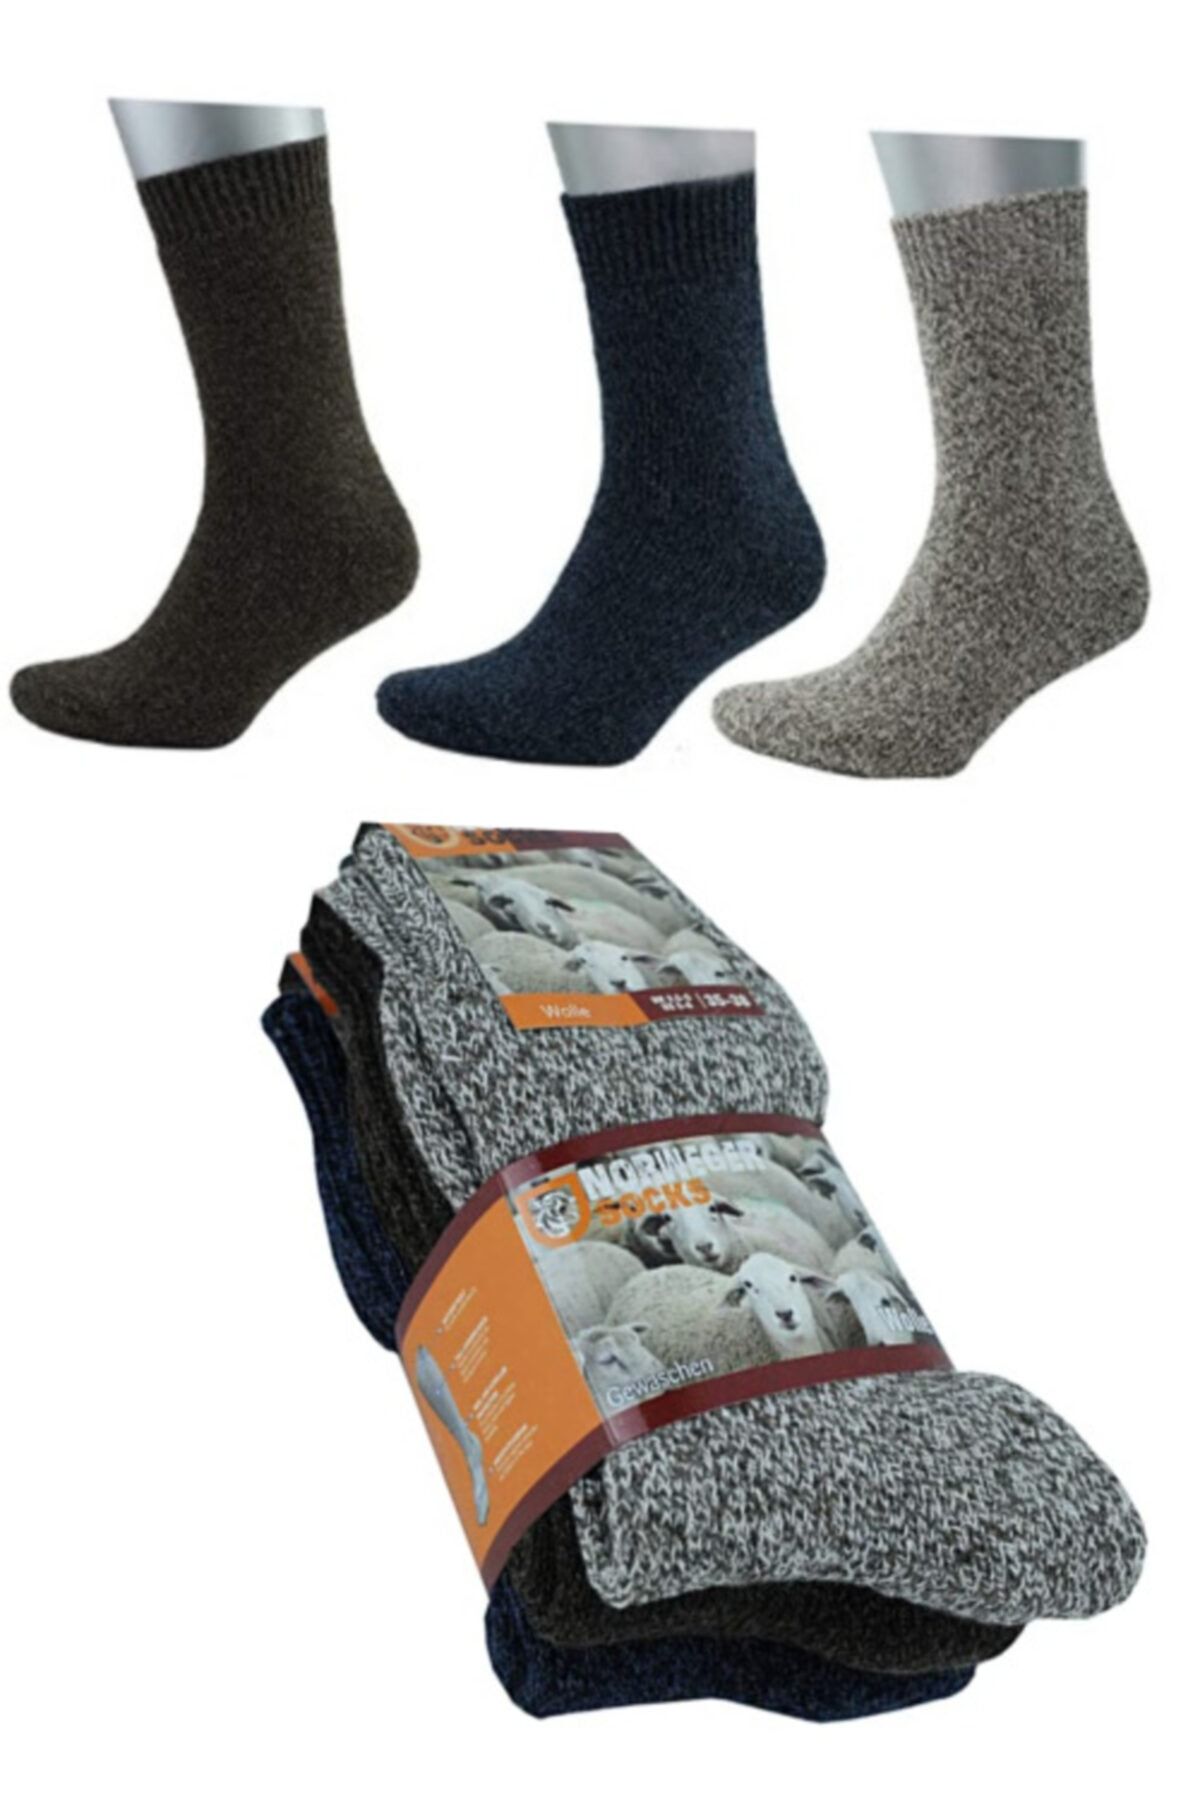 socksbox Norveç Tipi Termal Havlulu Yün Kışlık Çorap